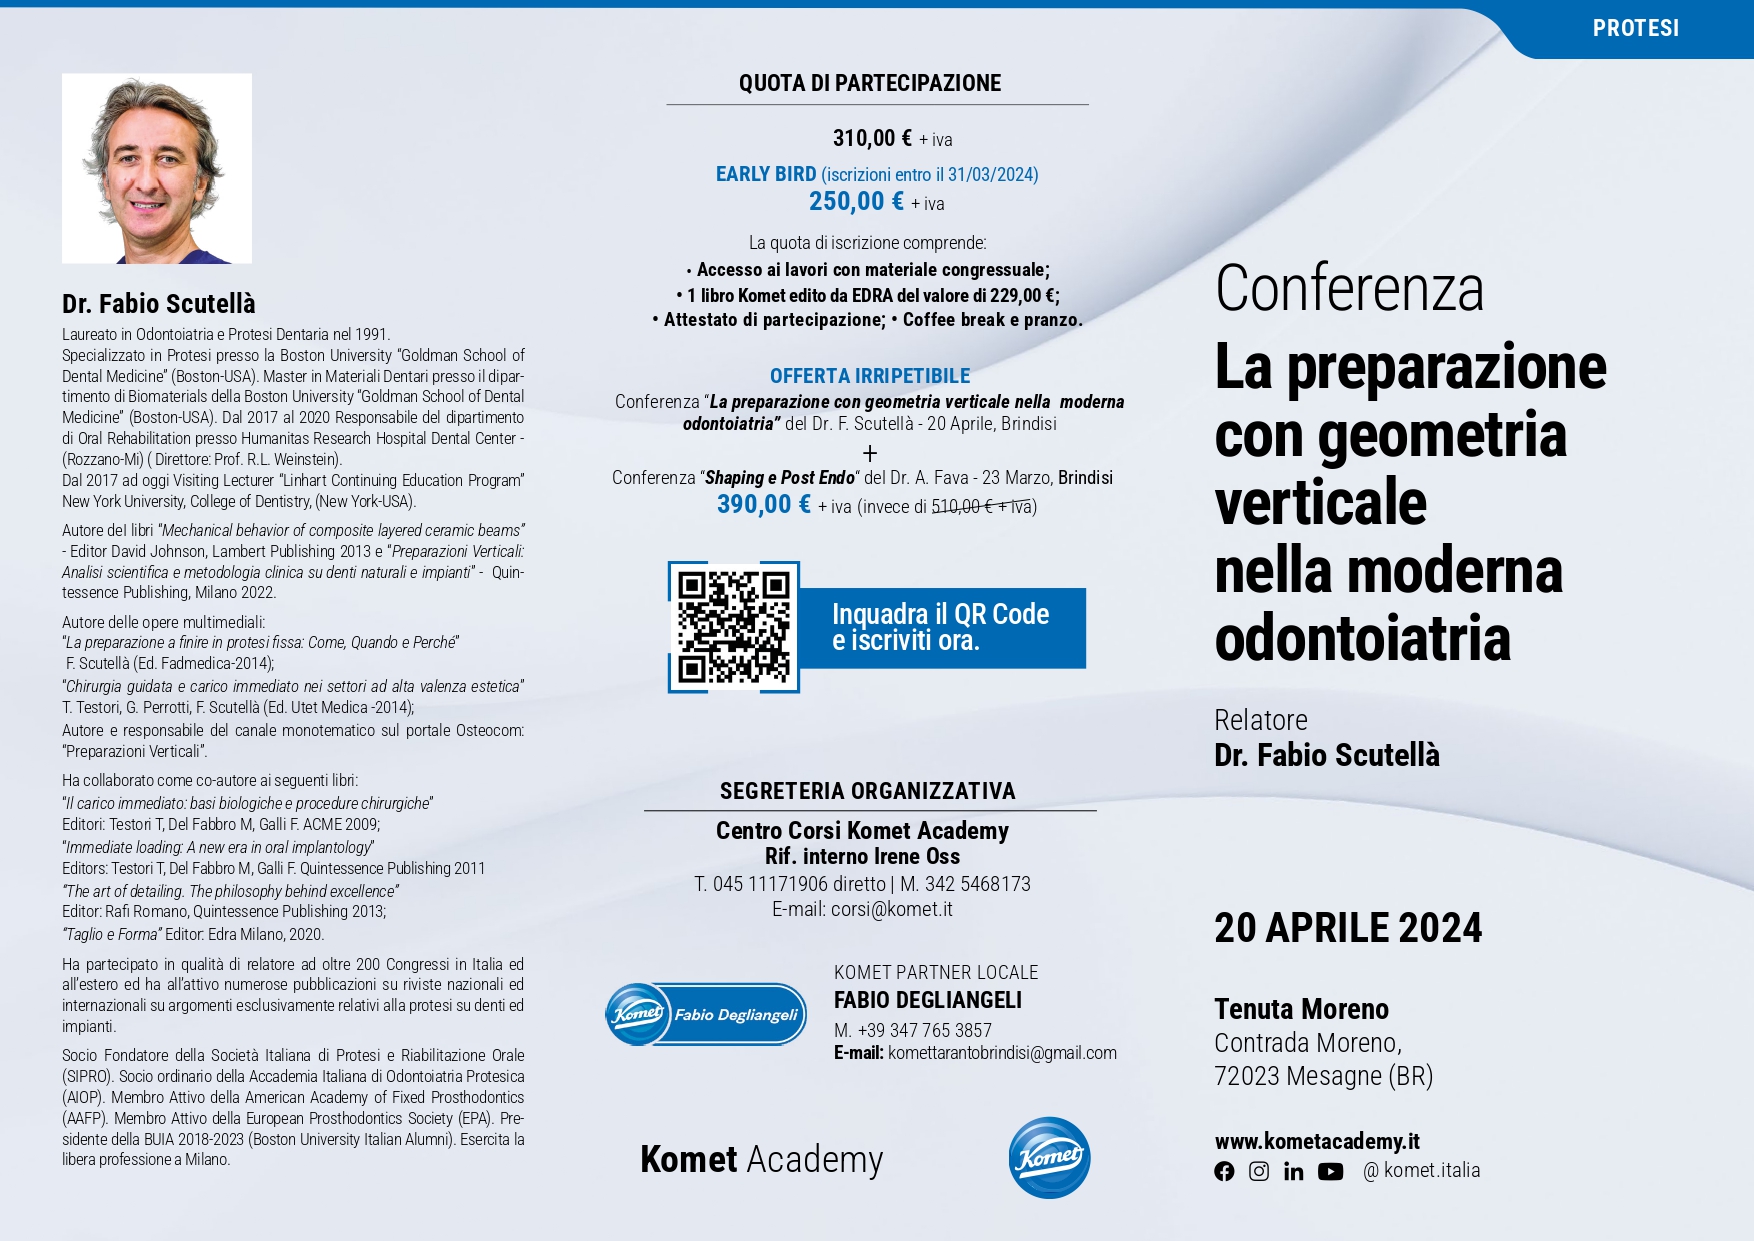 Conferenza "La preparazione con geometria verticale nella moderna odontoiatria" - Dr. Fabio Scutellà